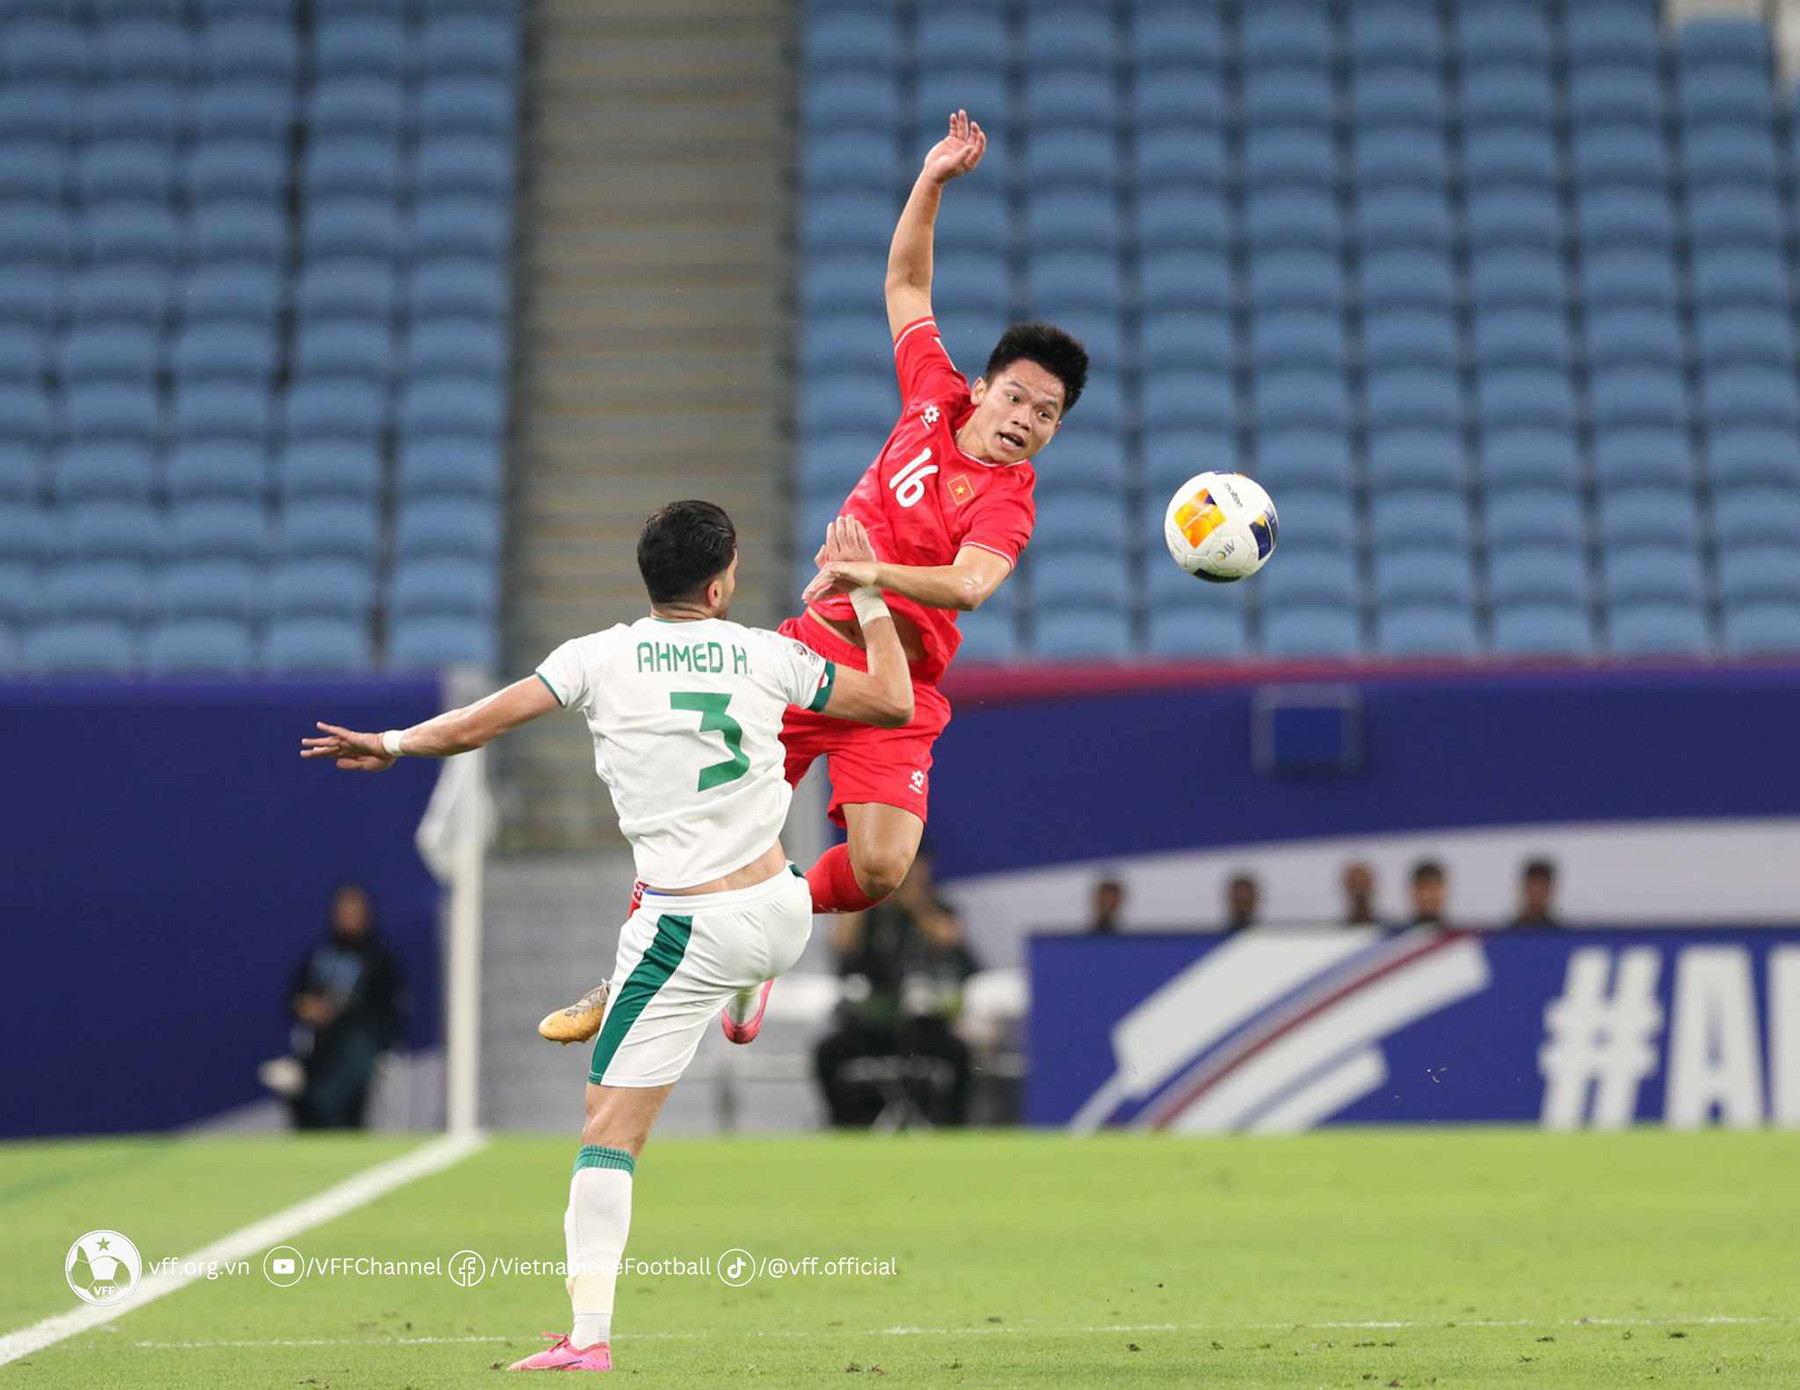 CĐV của U23 Việt Nam chỉ ra nhiều hạn chế khiến đội nhà bại trận- Ảnh 1.